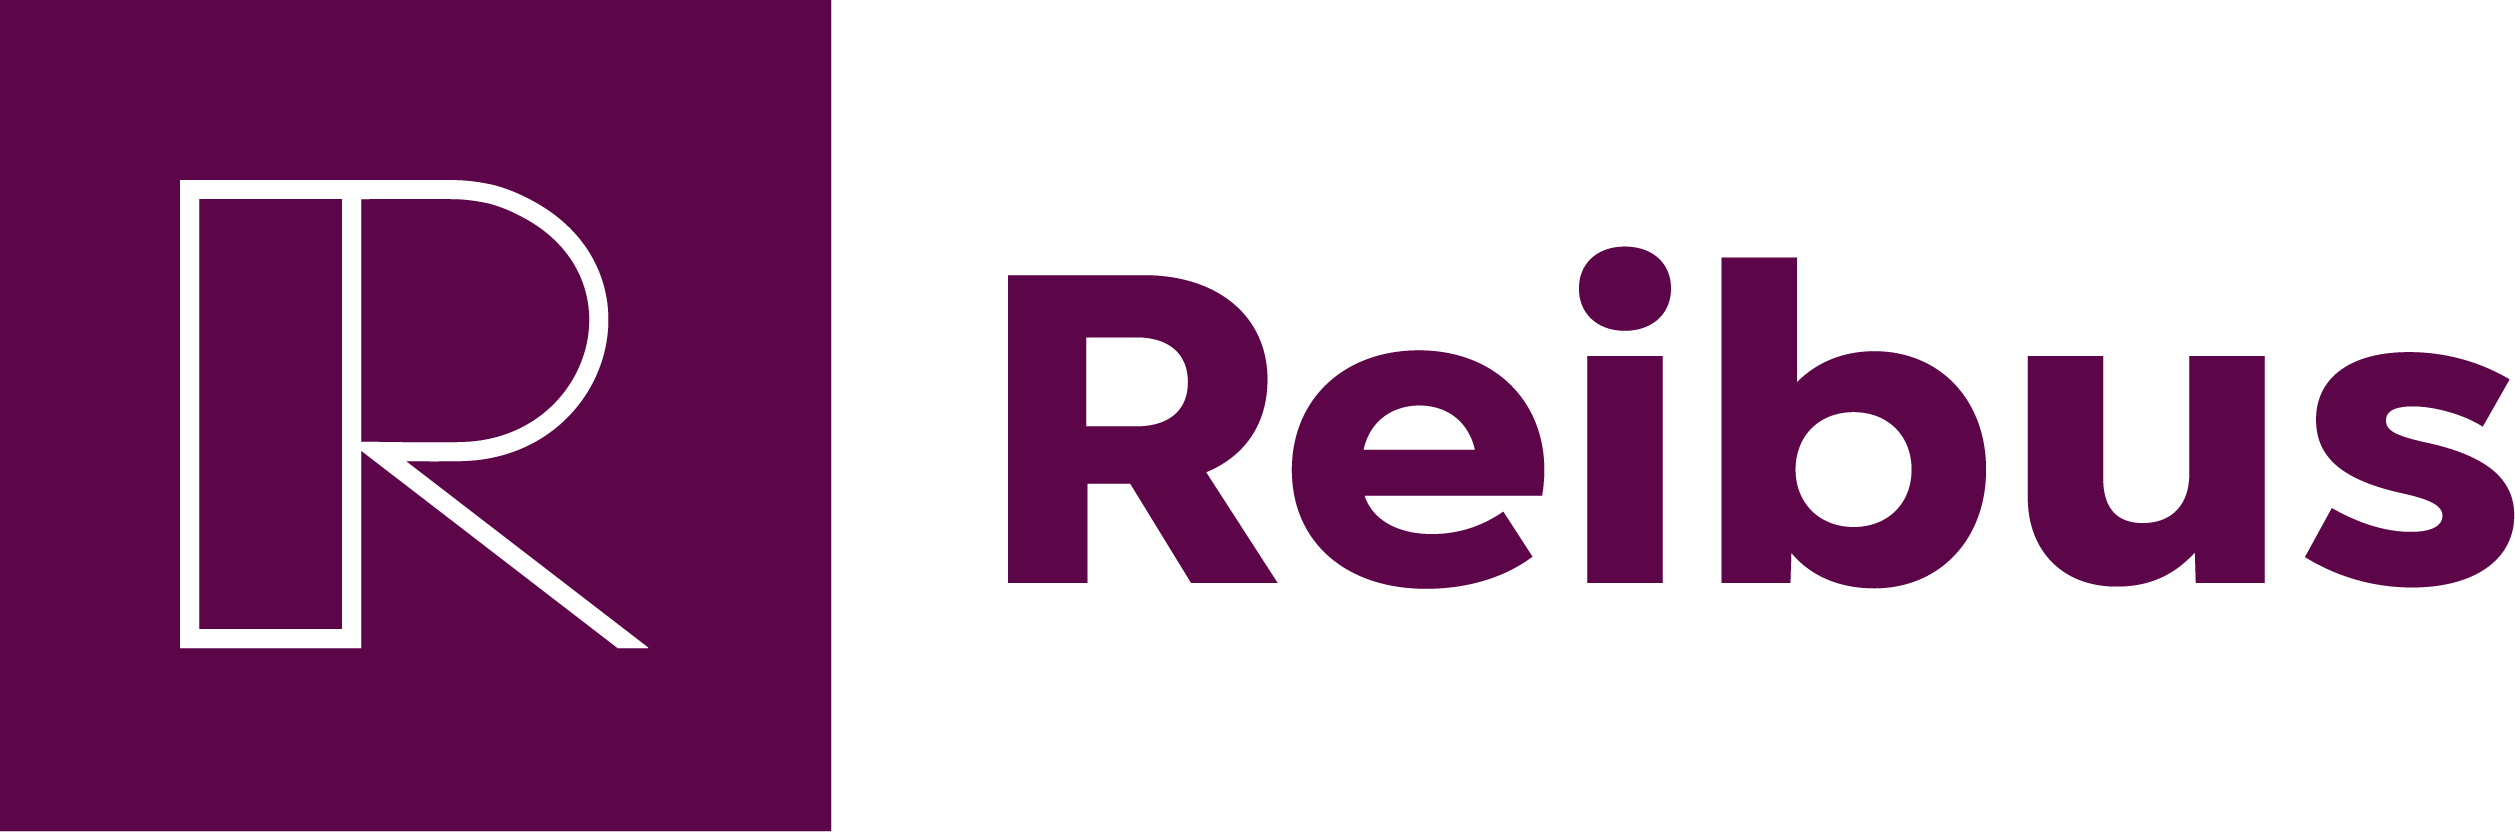 Vision Fund investment portfolio company Reibus's logo